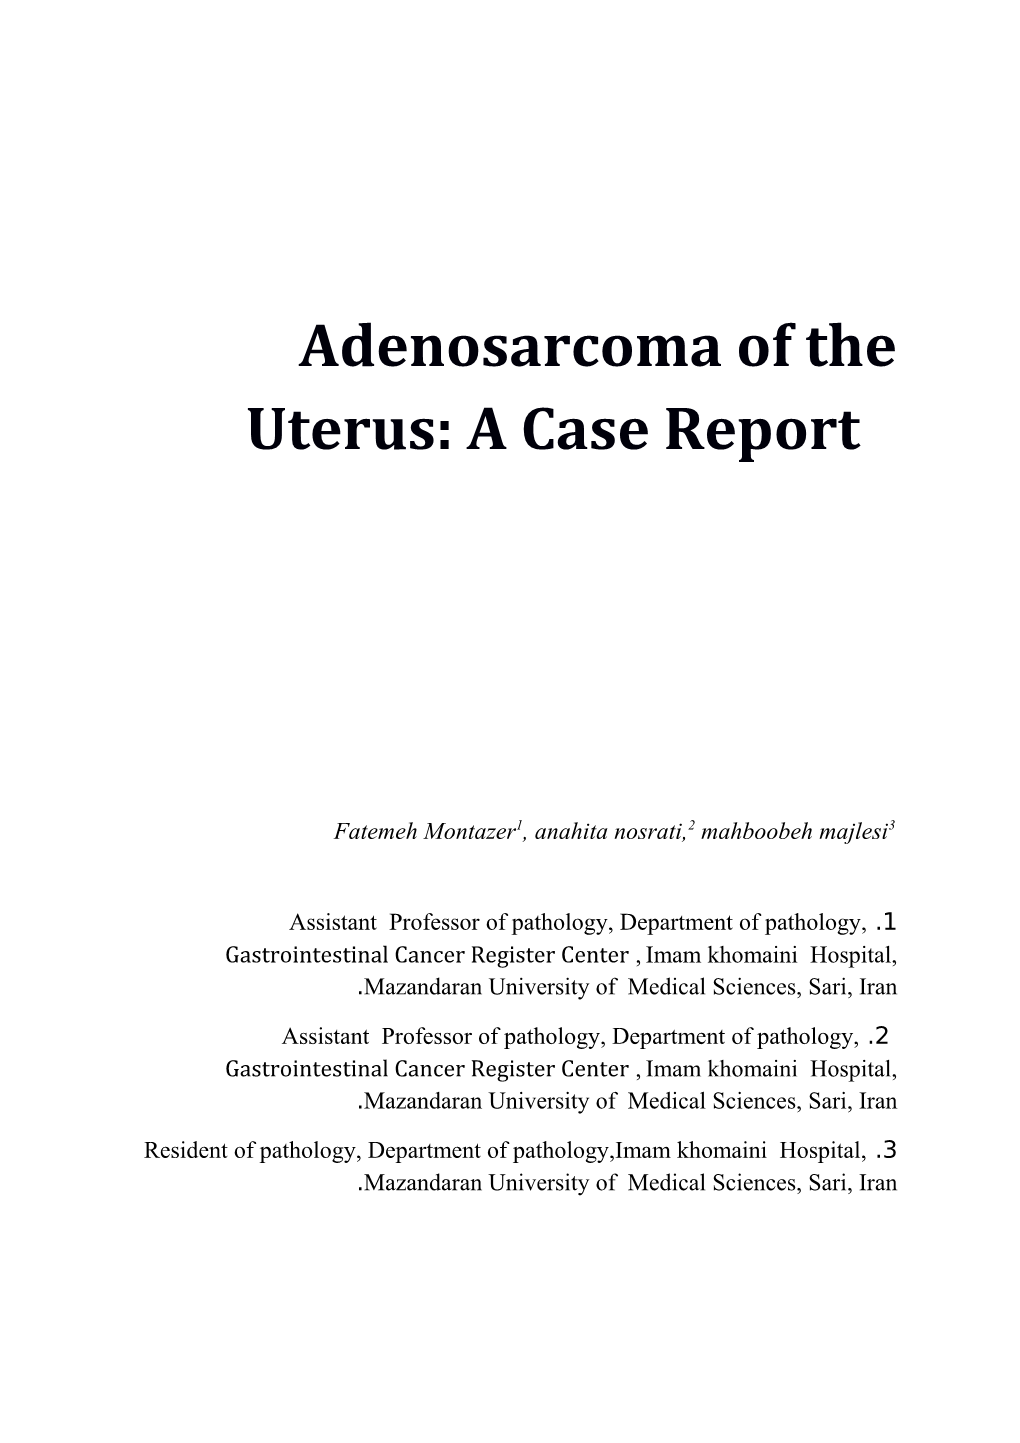 Adenosarcoma of the Uterus: a Case Report